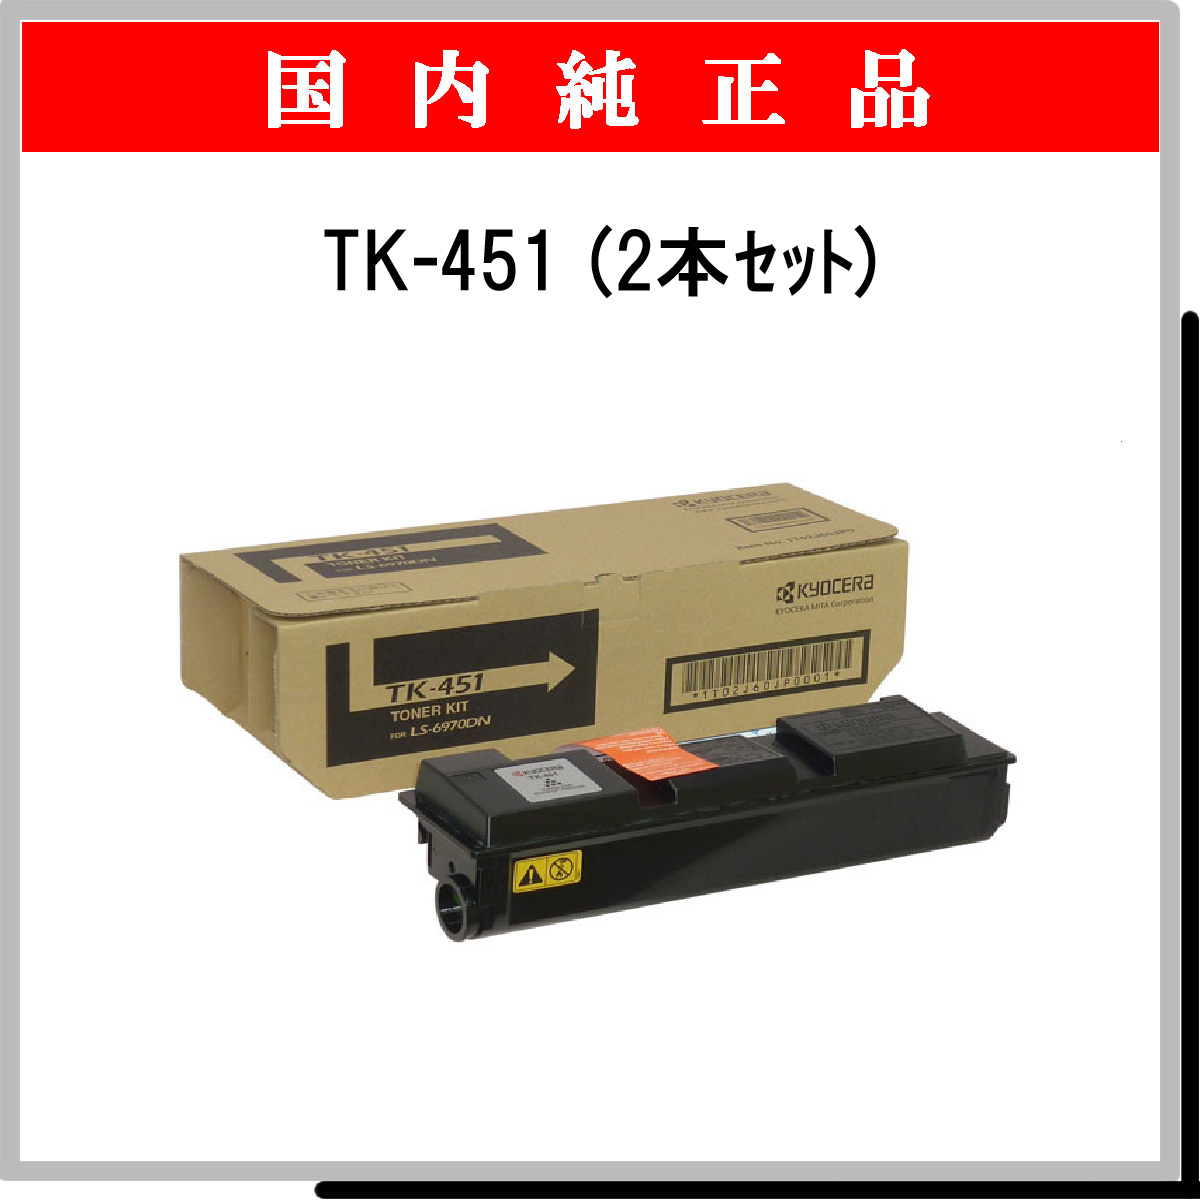 初売り 京セラ tk451 2本セット | promochess.com